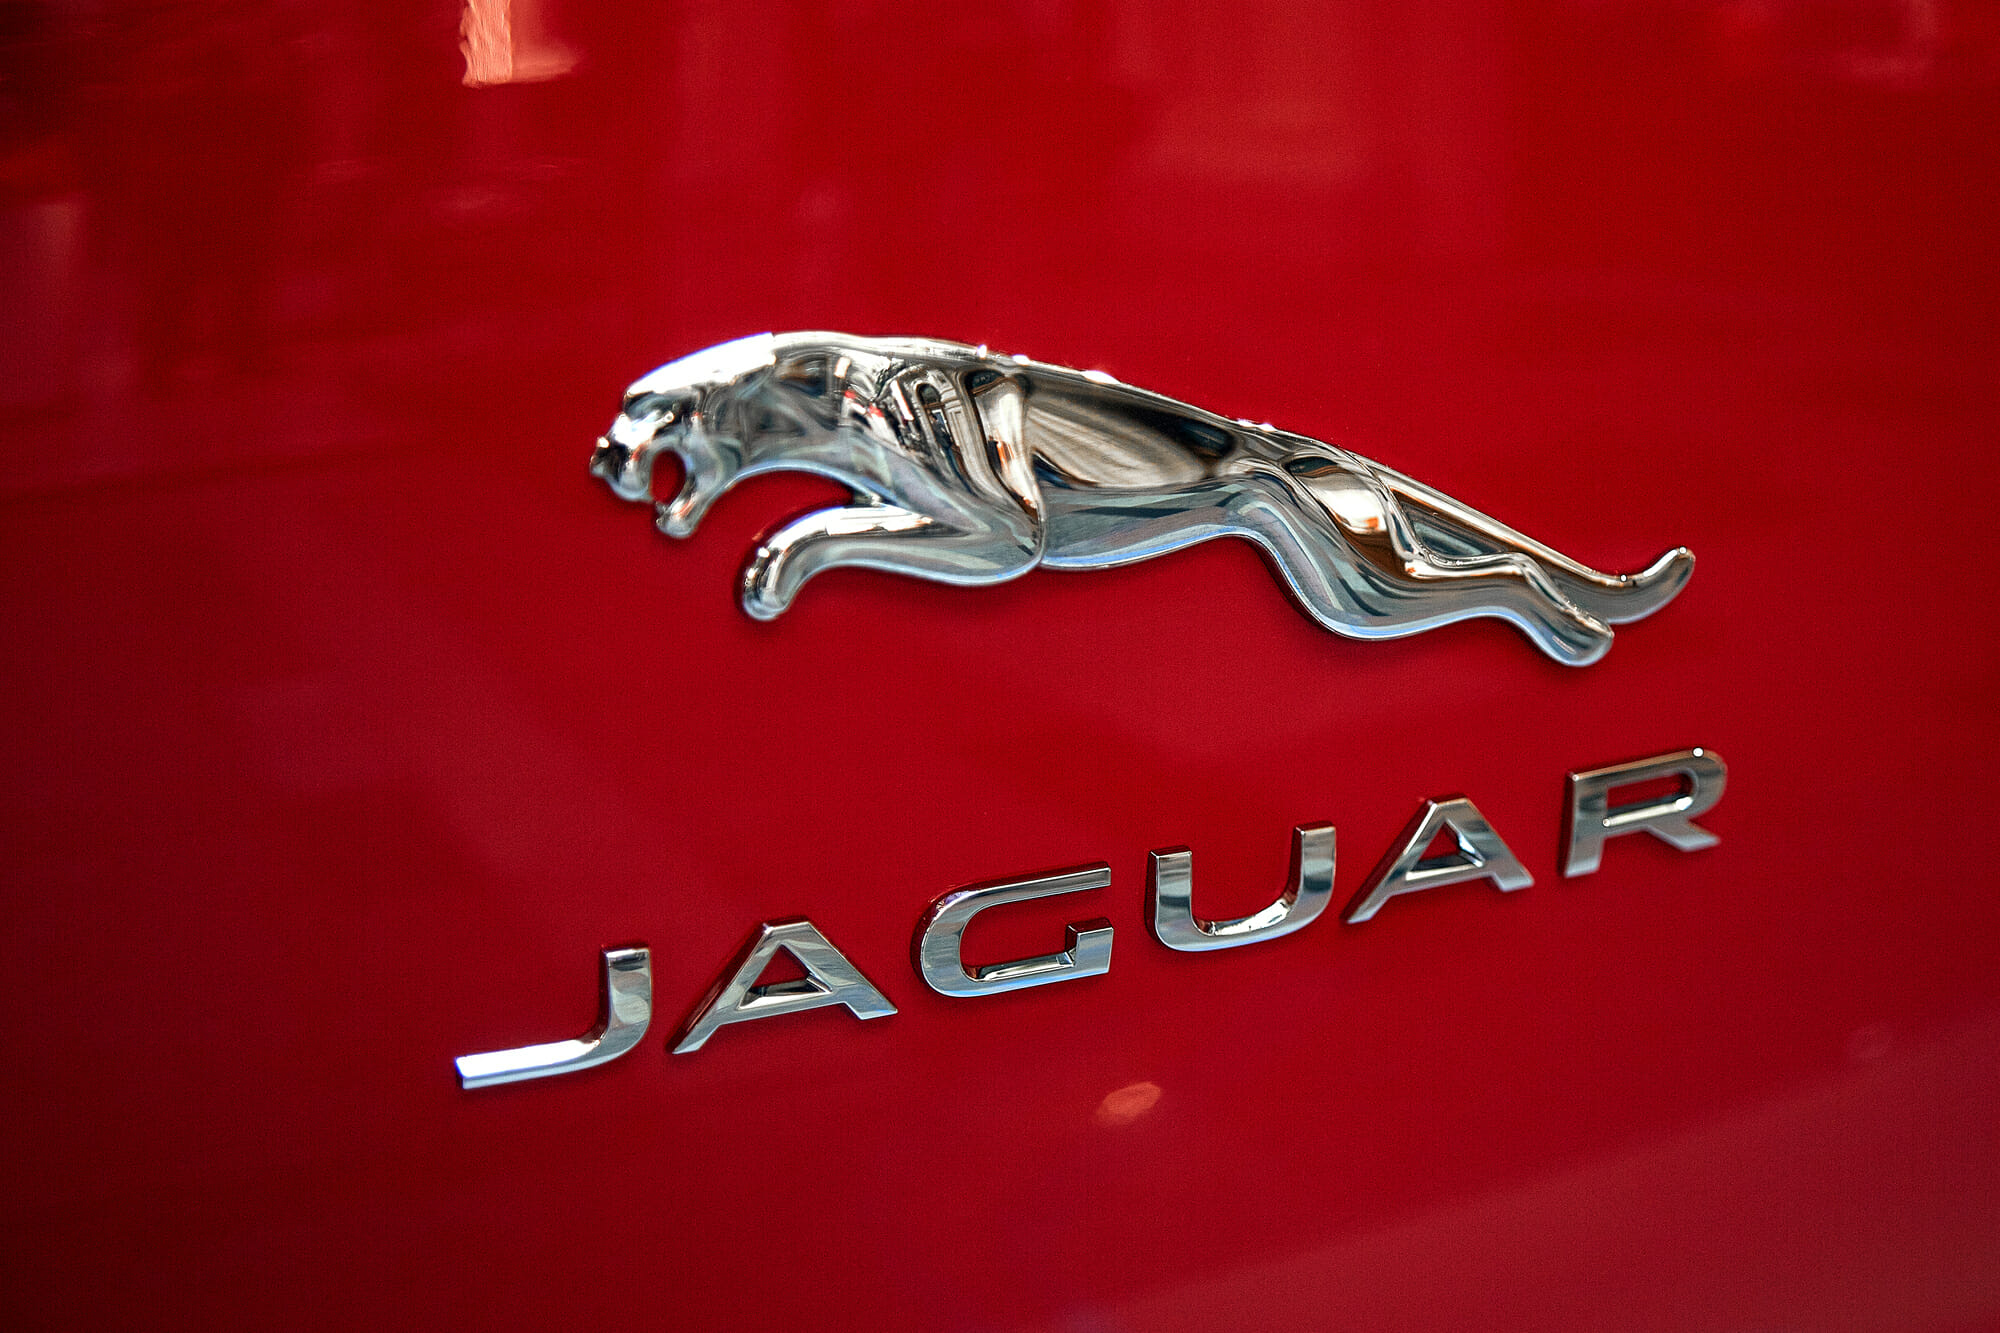 Jaguar Car Models